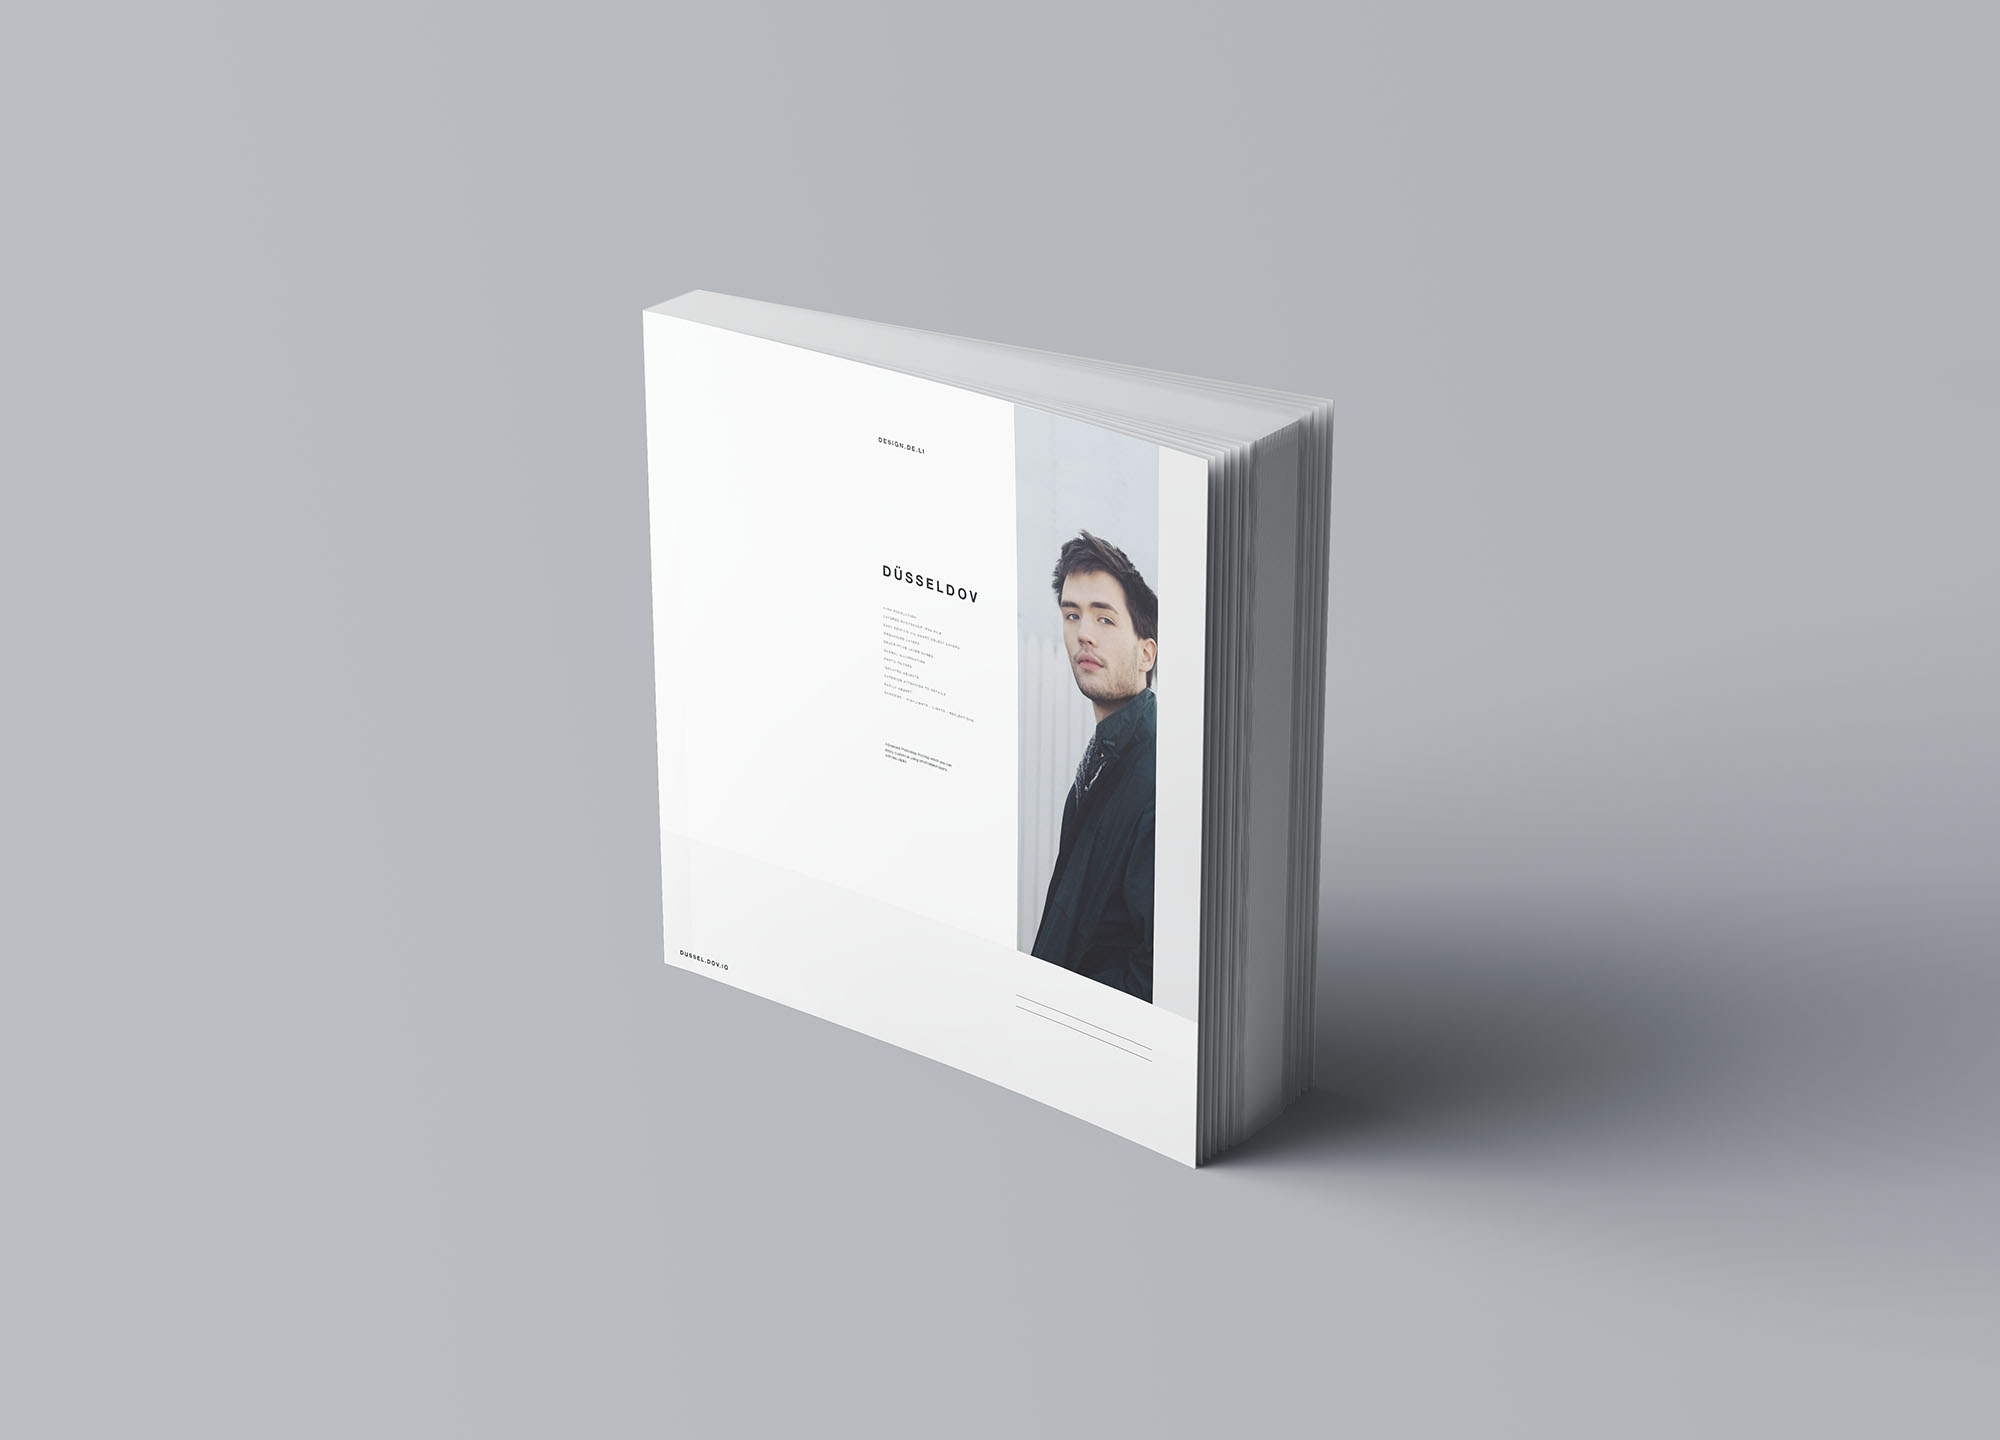 方形软封图书内页版式设计效果图样机素材中国精选 Square Softcover Book Mockup插图(6)